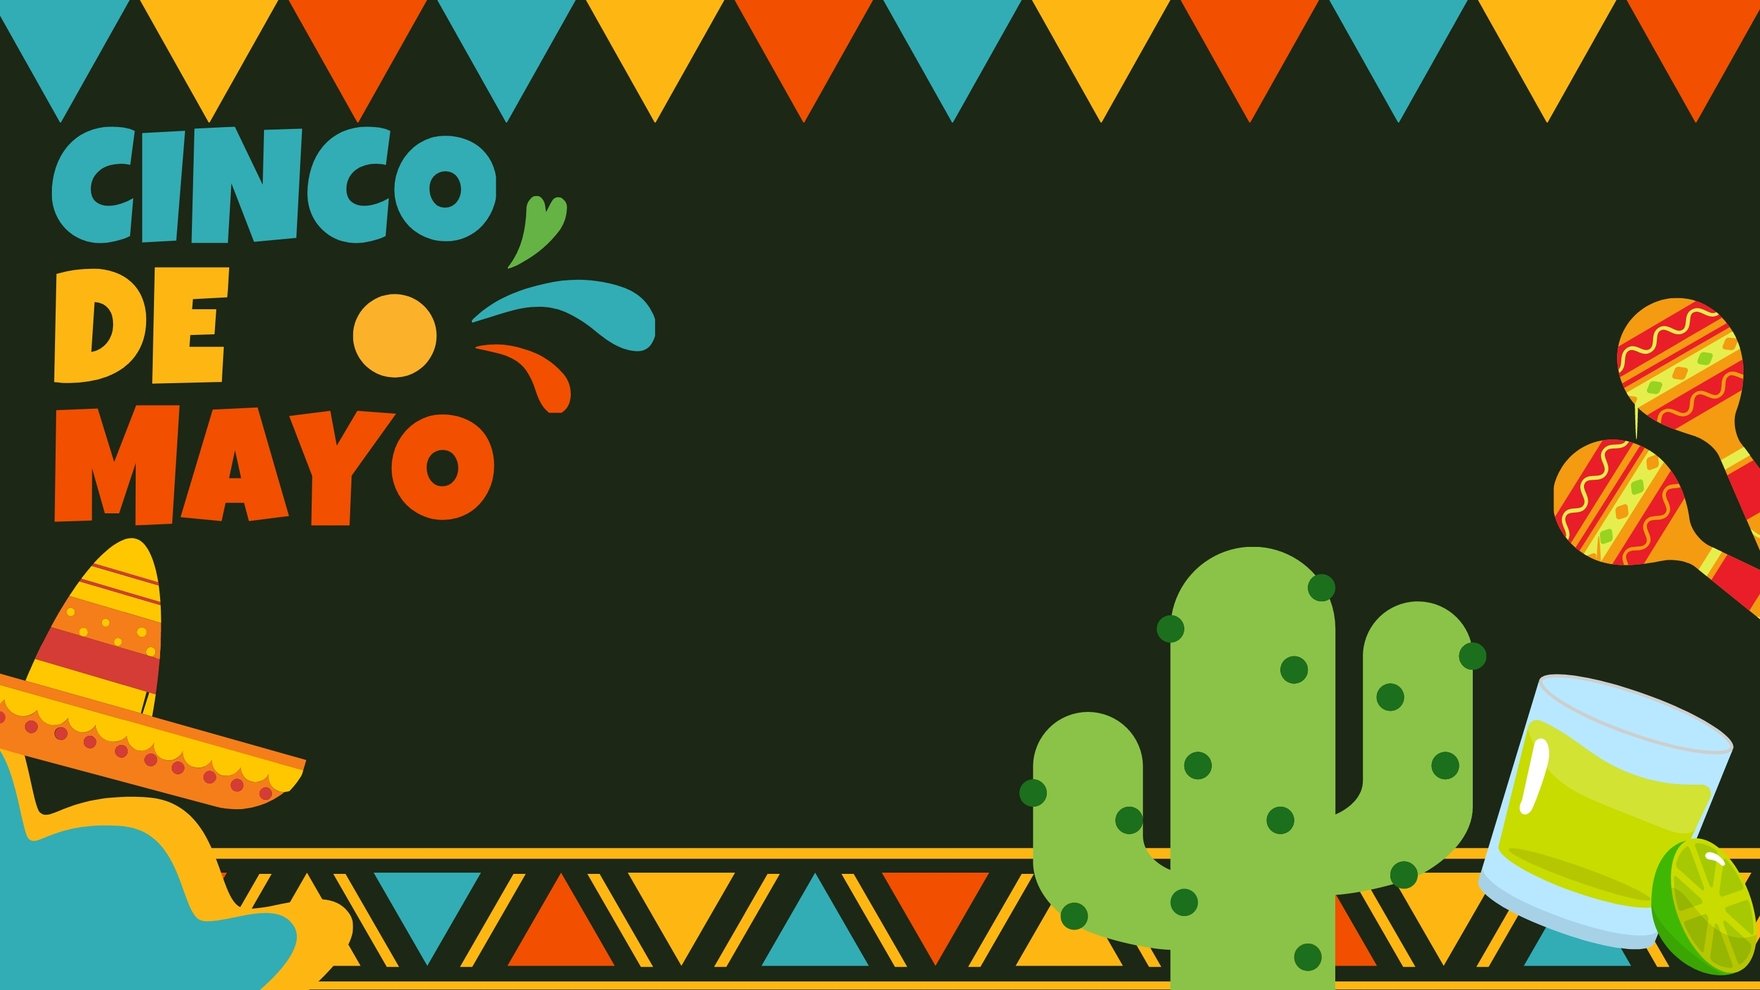 Free Cinco de Mayo Banner Background in PDF, Illustrator, PSD, EPS, SVG, JPG, PNG